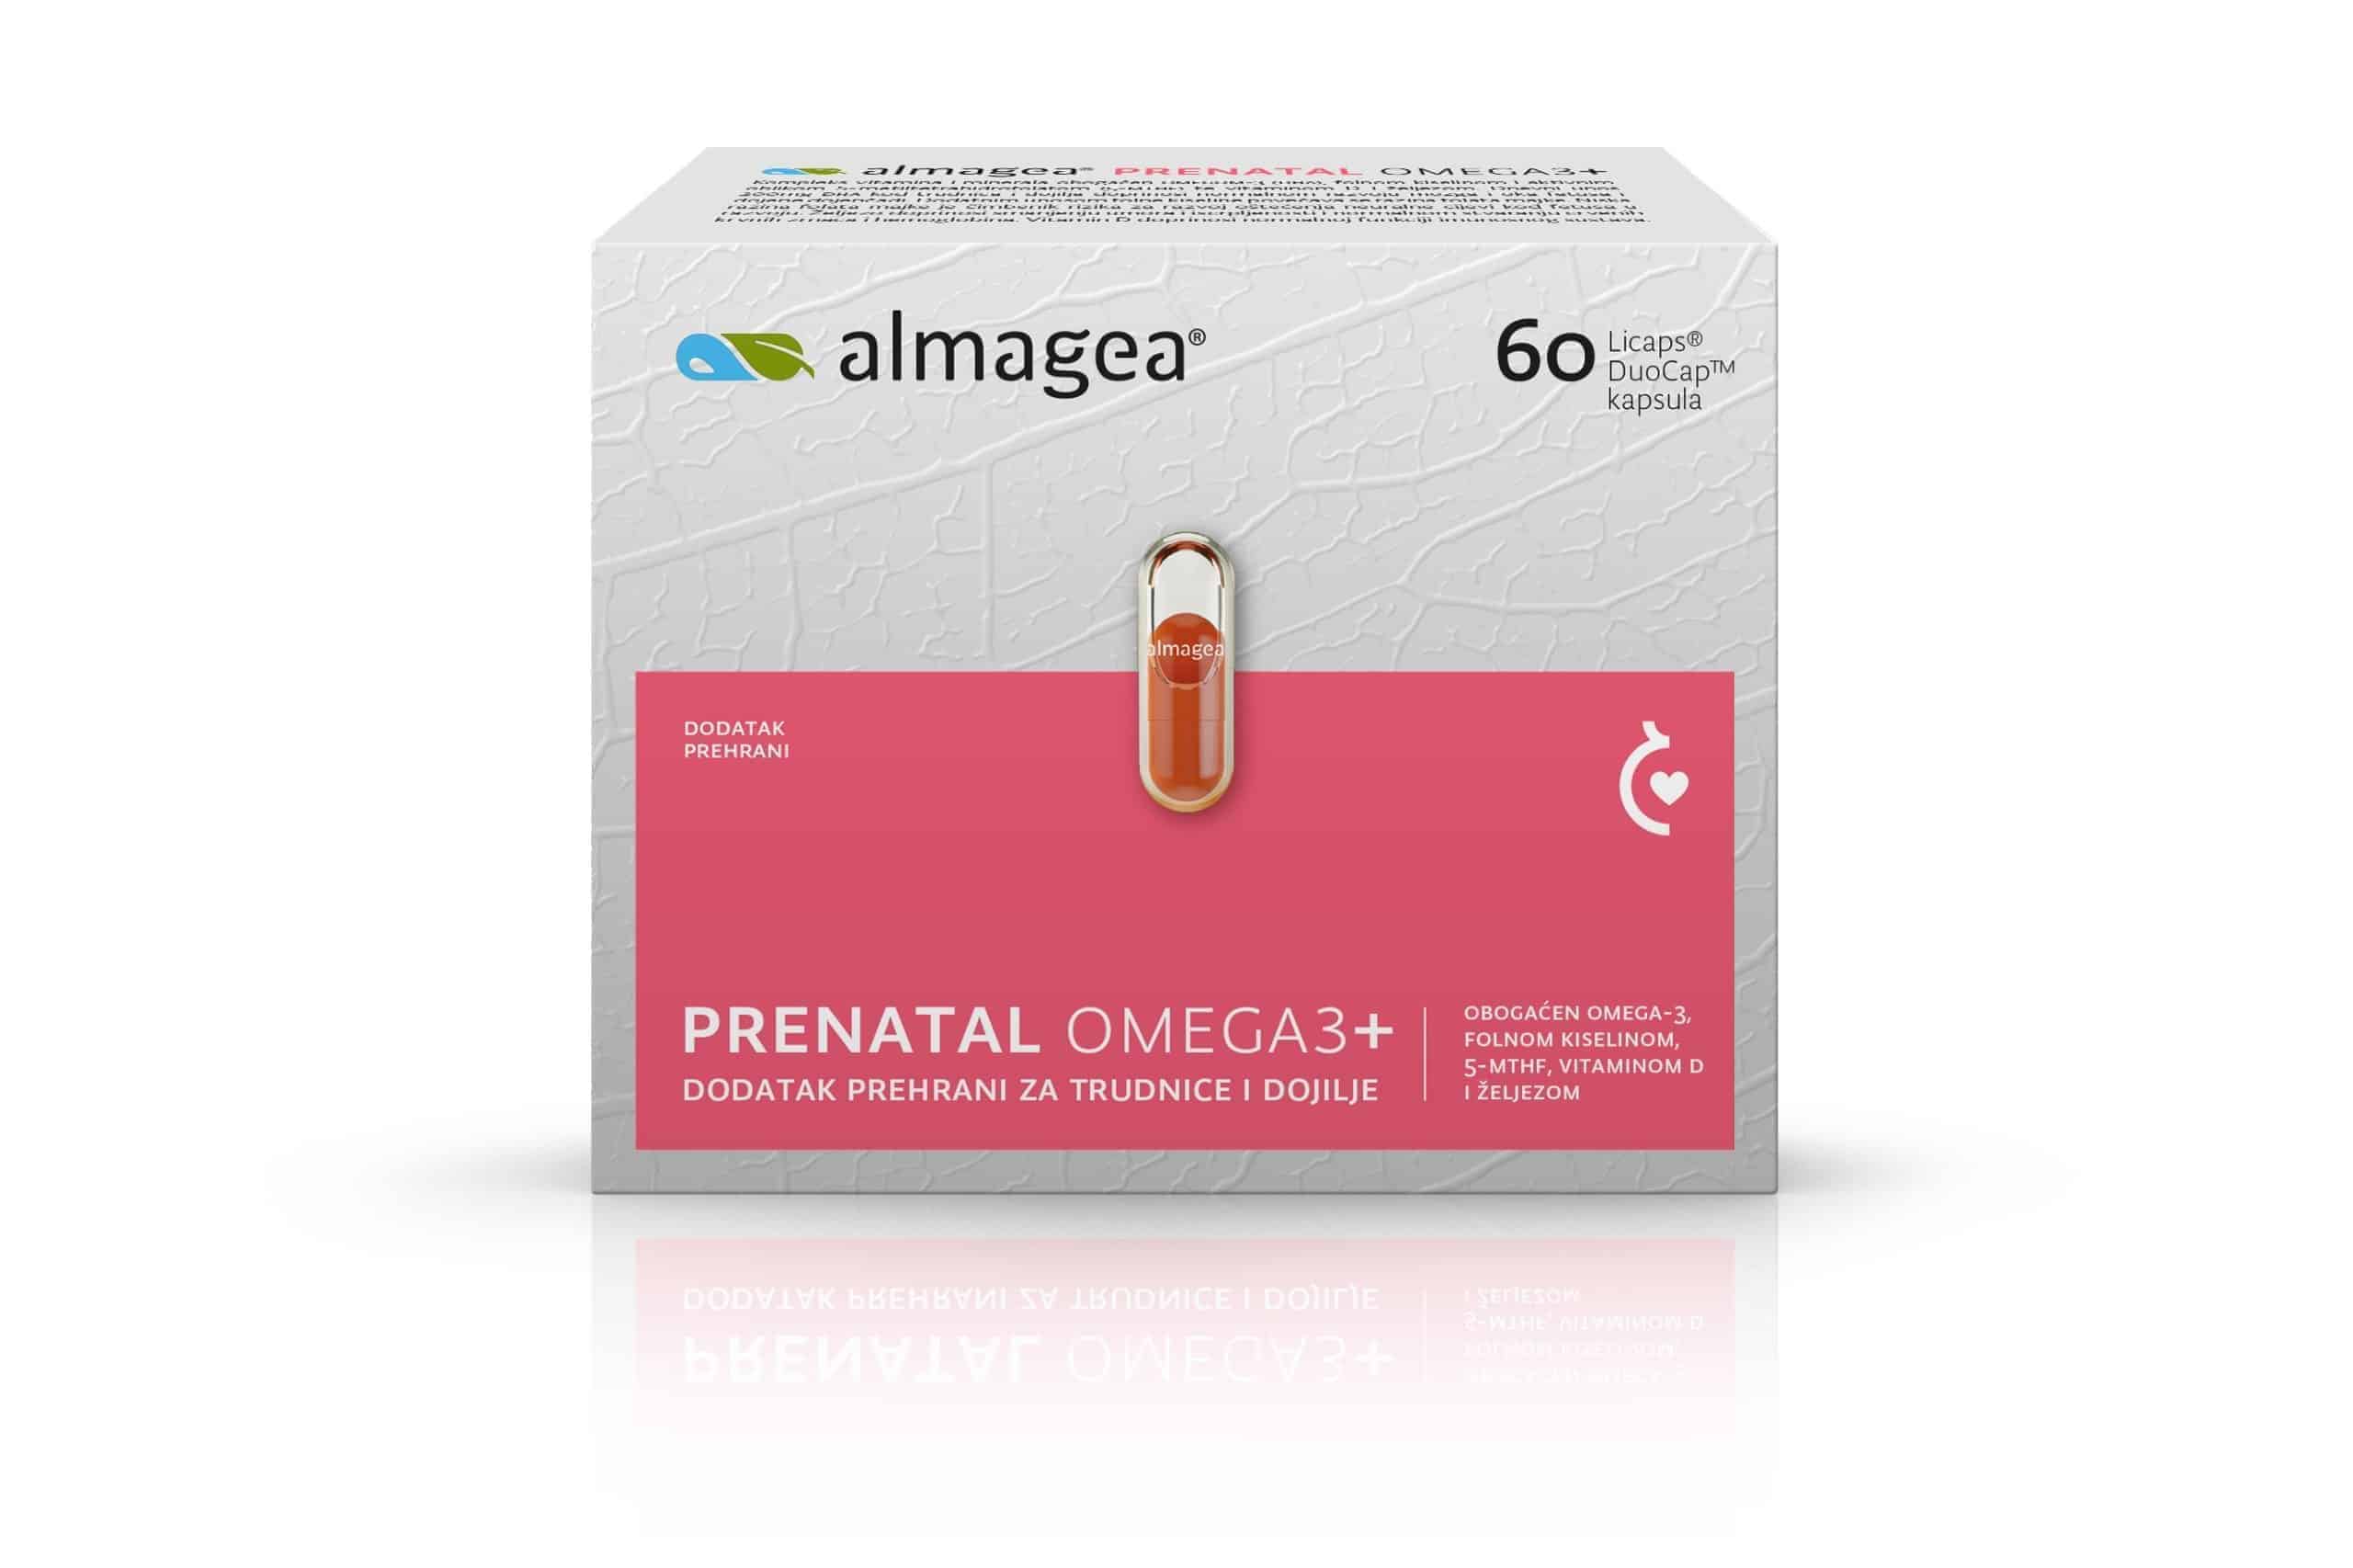 Almagea® Prenatal Omega3 Caps A'60 Nf 1